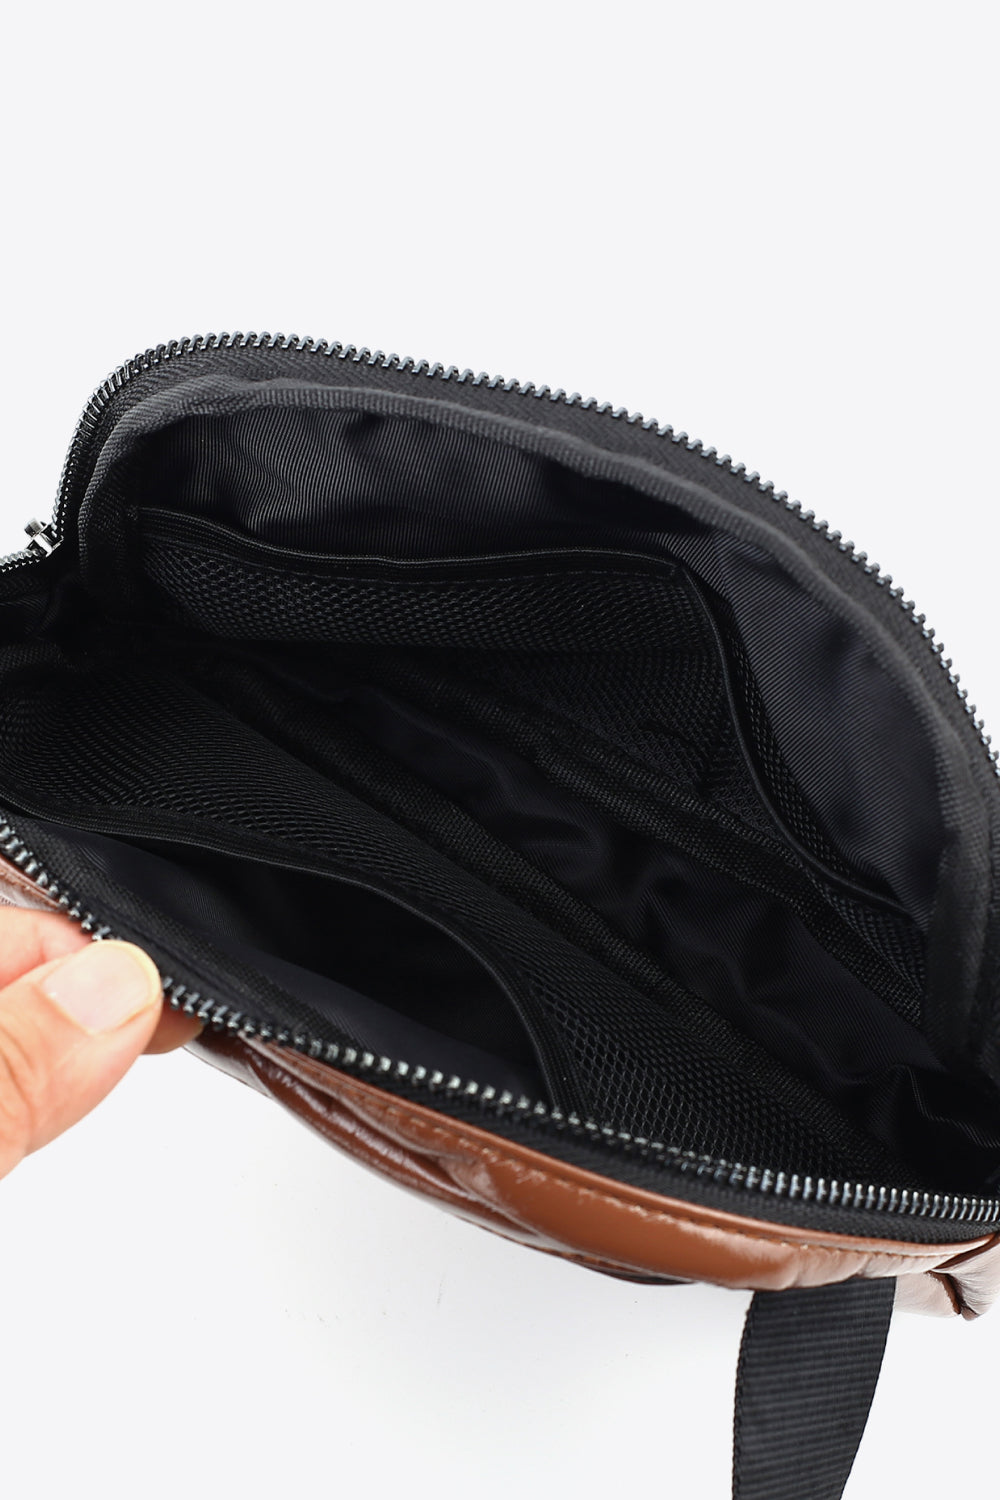 PU Leather Belt Bag